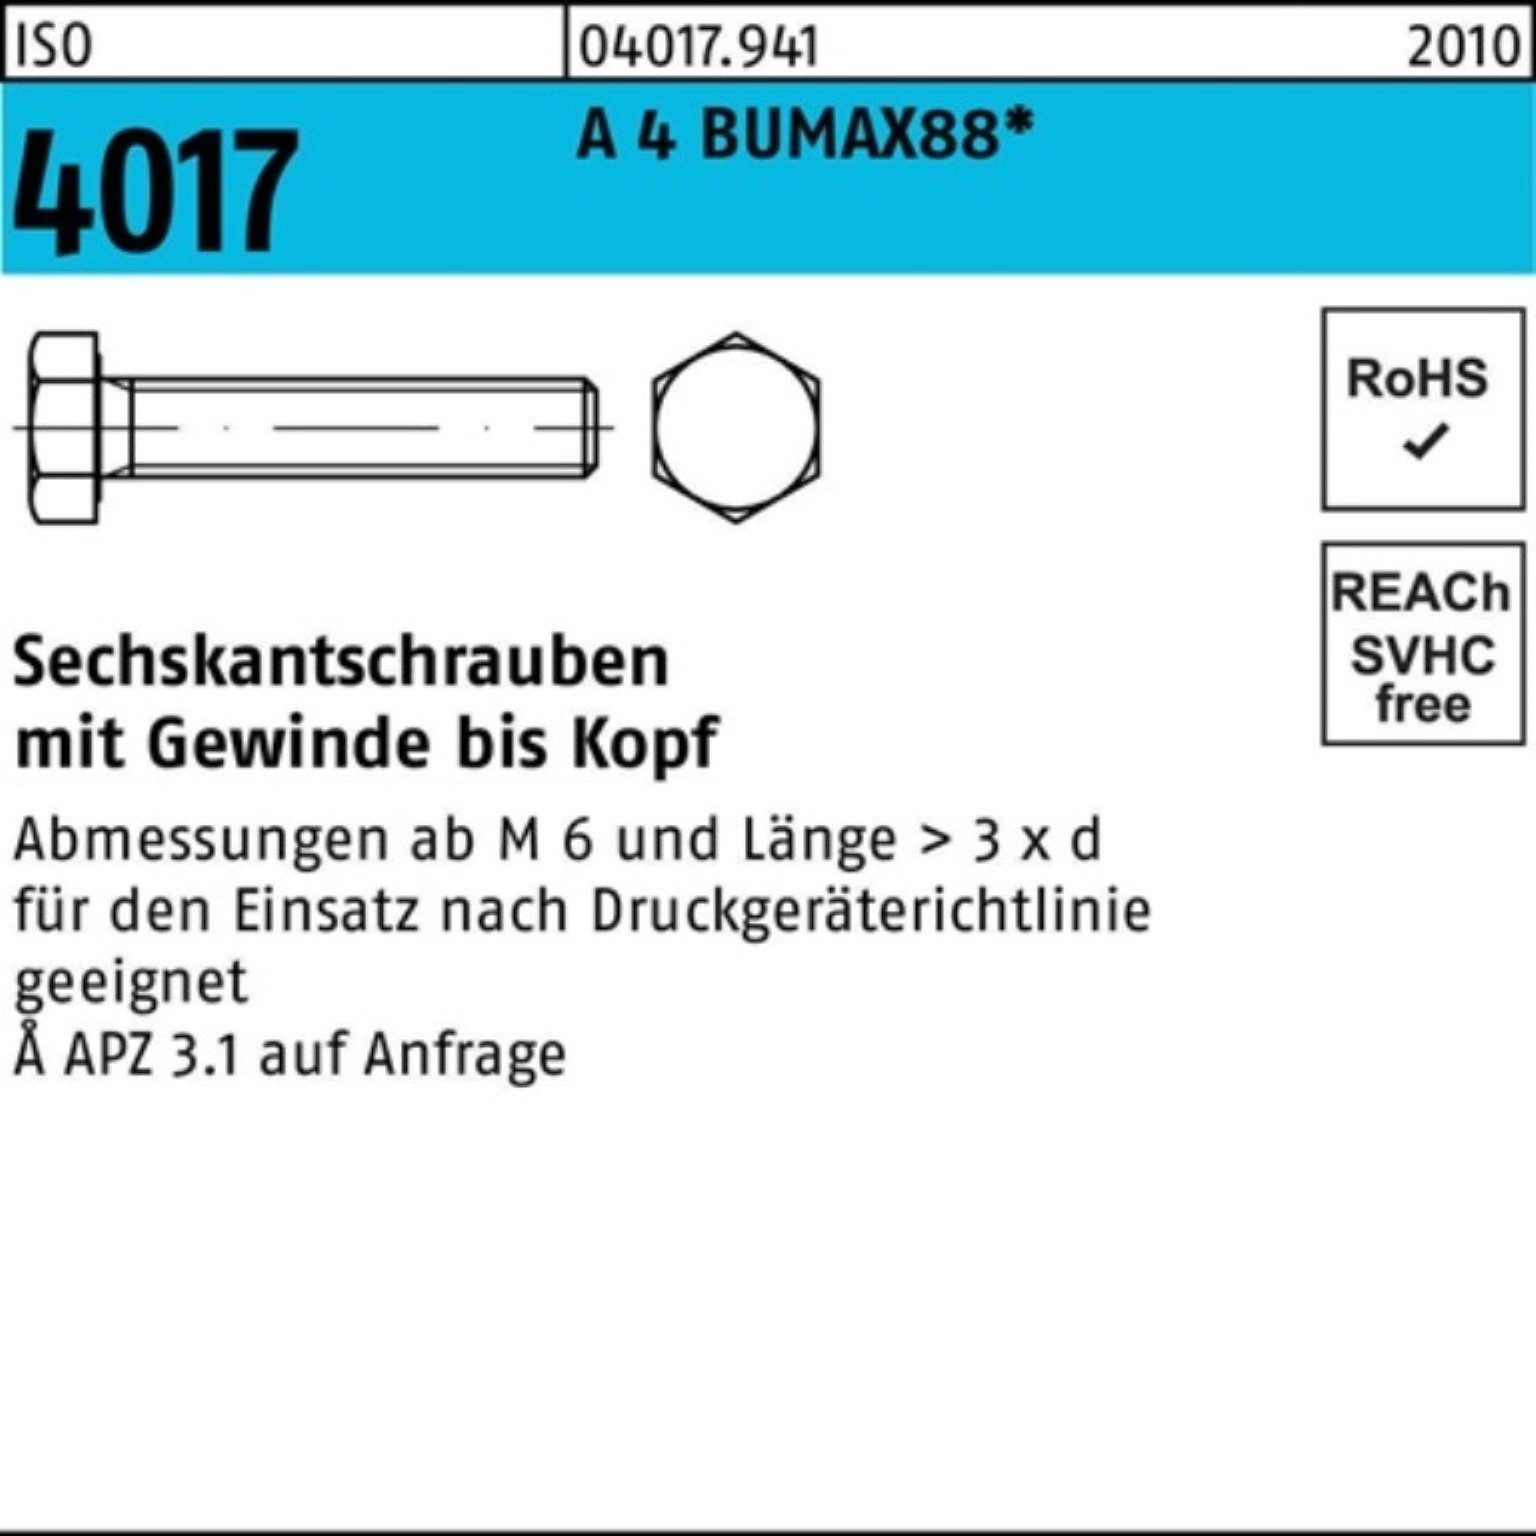 Bufab Sechskantschraube 100er Pack Sechskantschraube 25 VG 100 4 4017 BUMAX88 M5x ISO Stück A